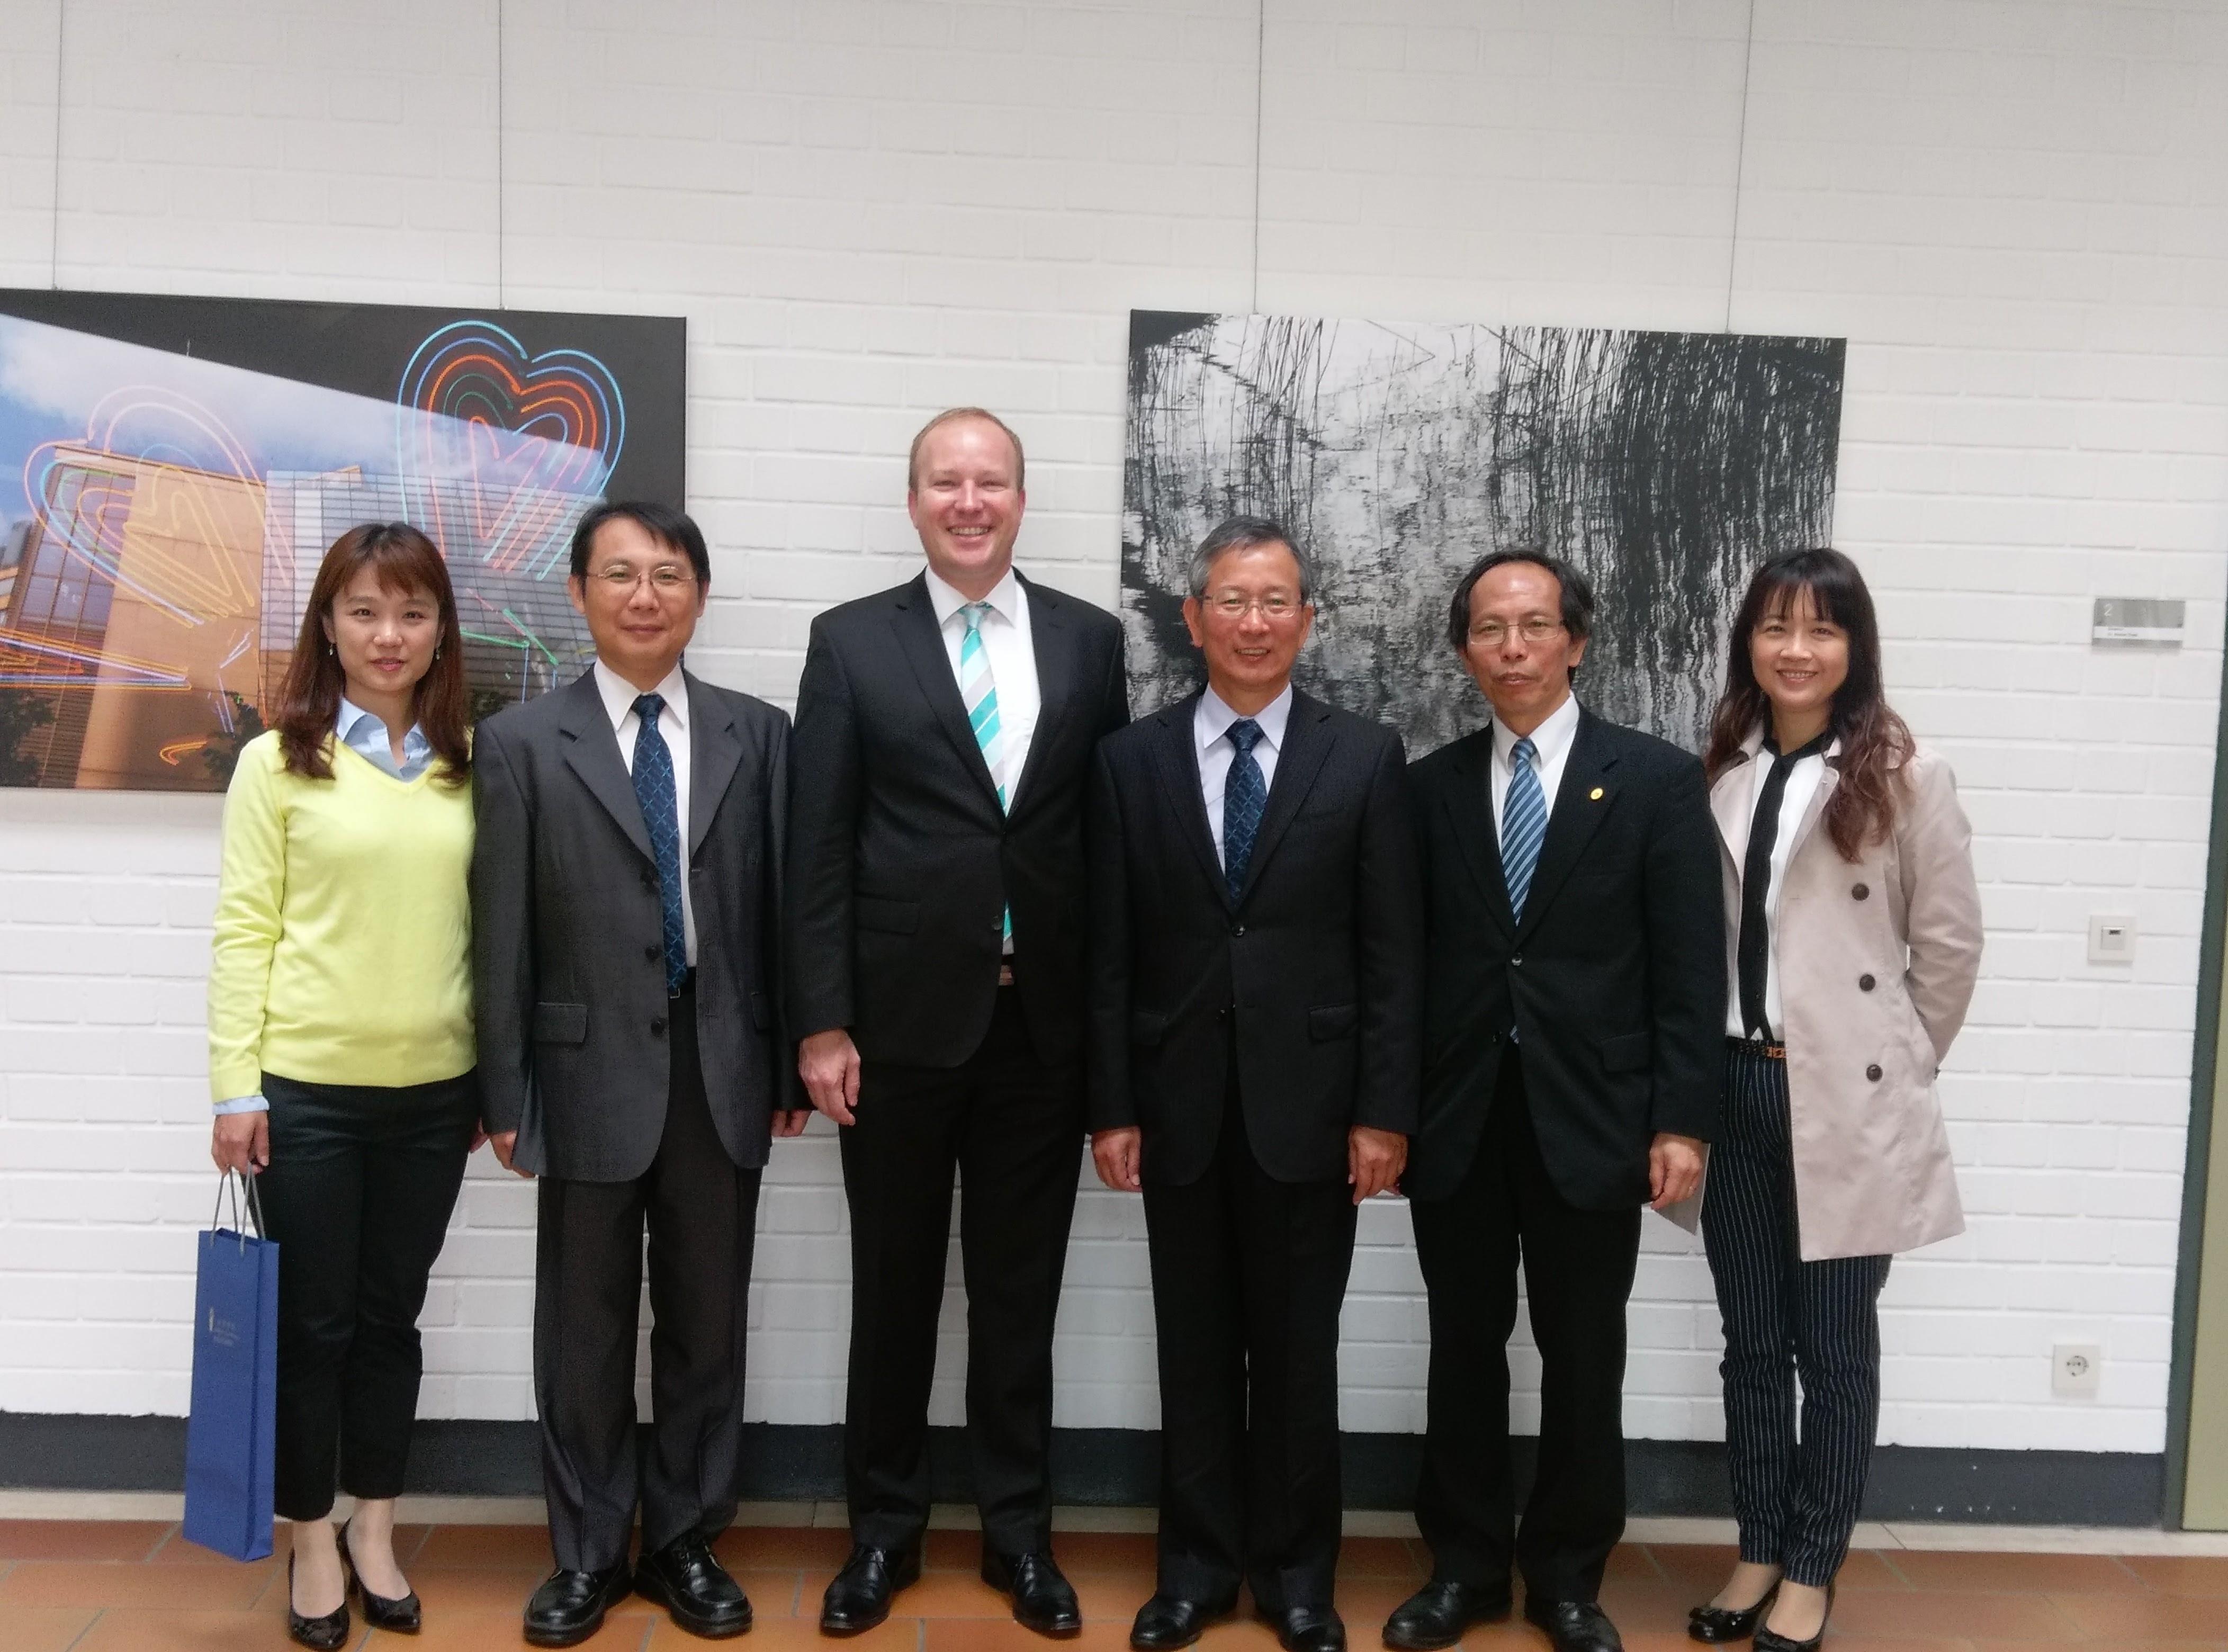 Herr Jui-kun Huang begleitet die Delegation der Richterakademie aus Taiwan in die Deutsche Richterakademie in Trier.